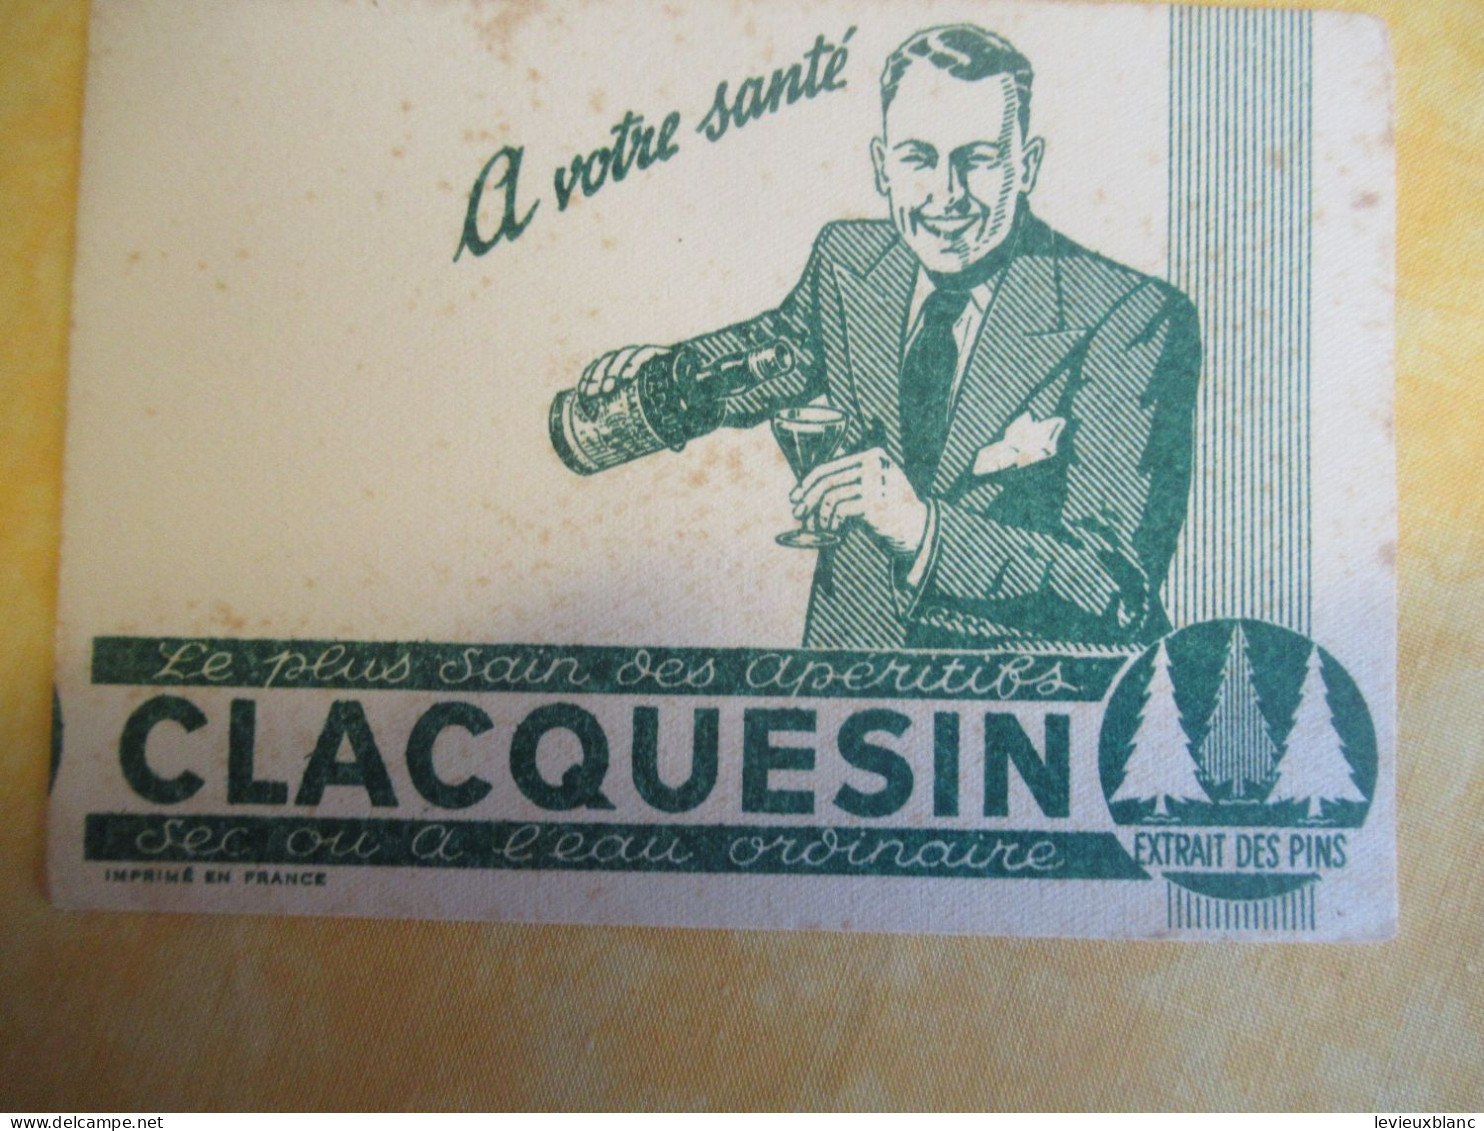 2 Petits Buvards Anciens /Liqueur/CLACQUESIN/ Extrait Des Pins/En été à L'eau Fraîche/Vers 1950-1960      BUV702 - Schnaps & Bier